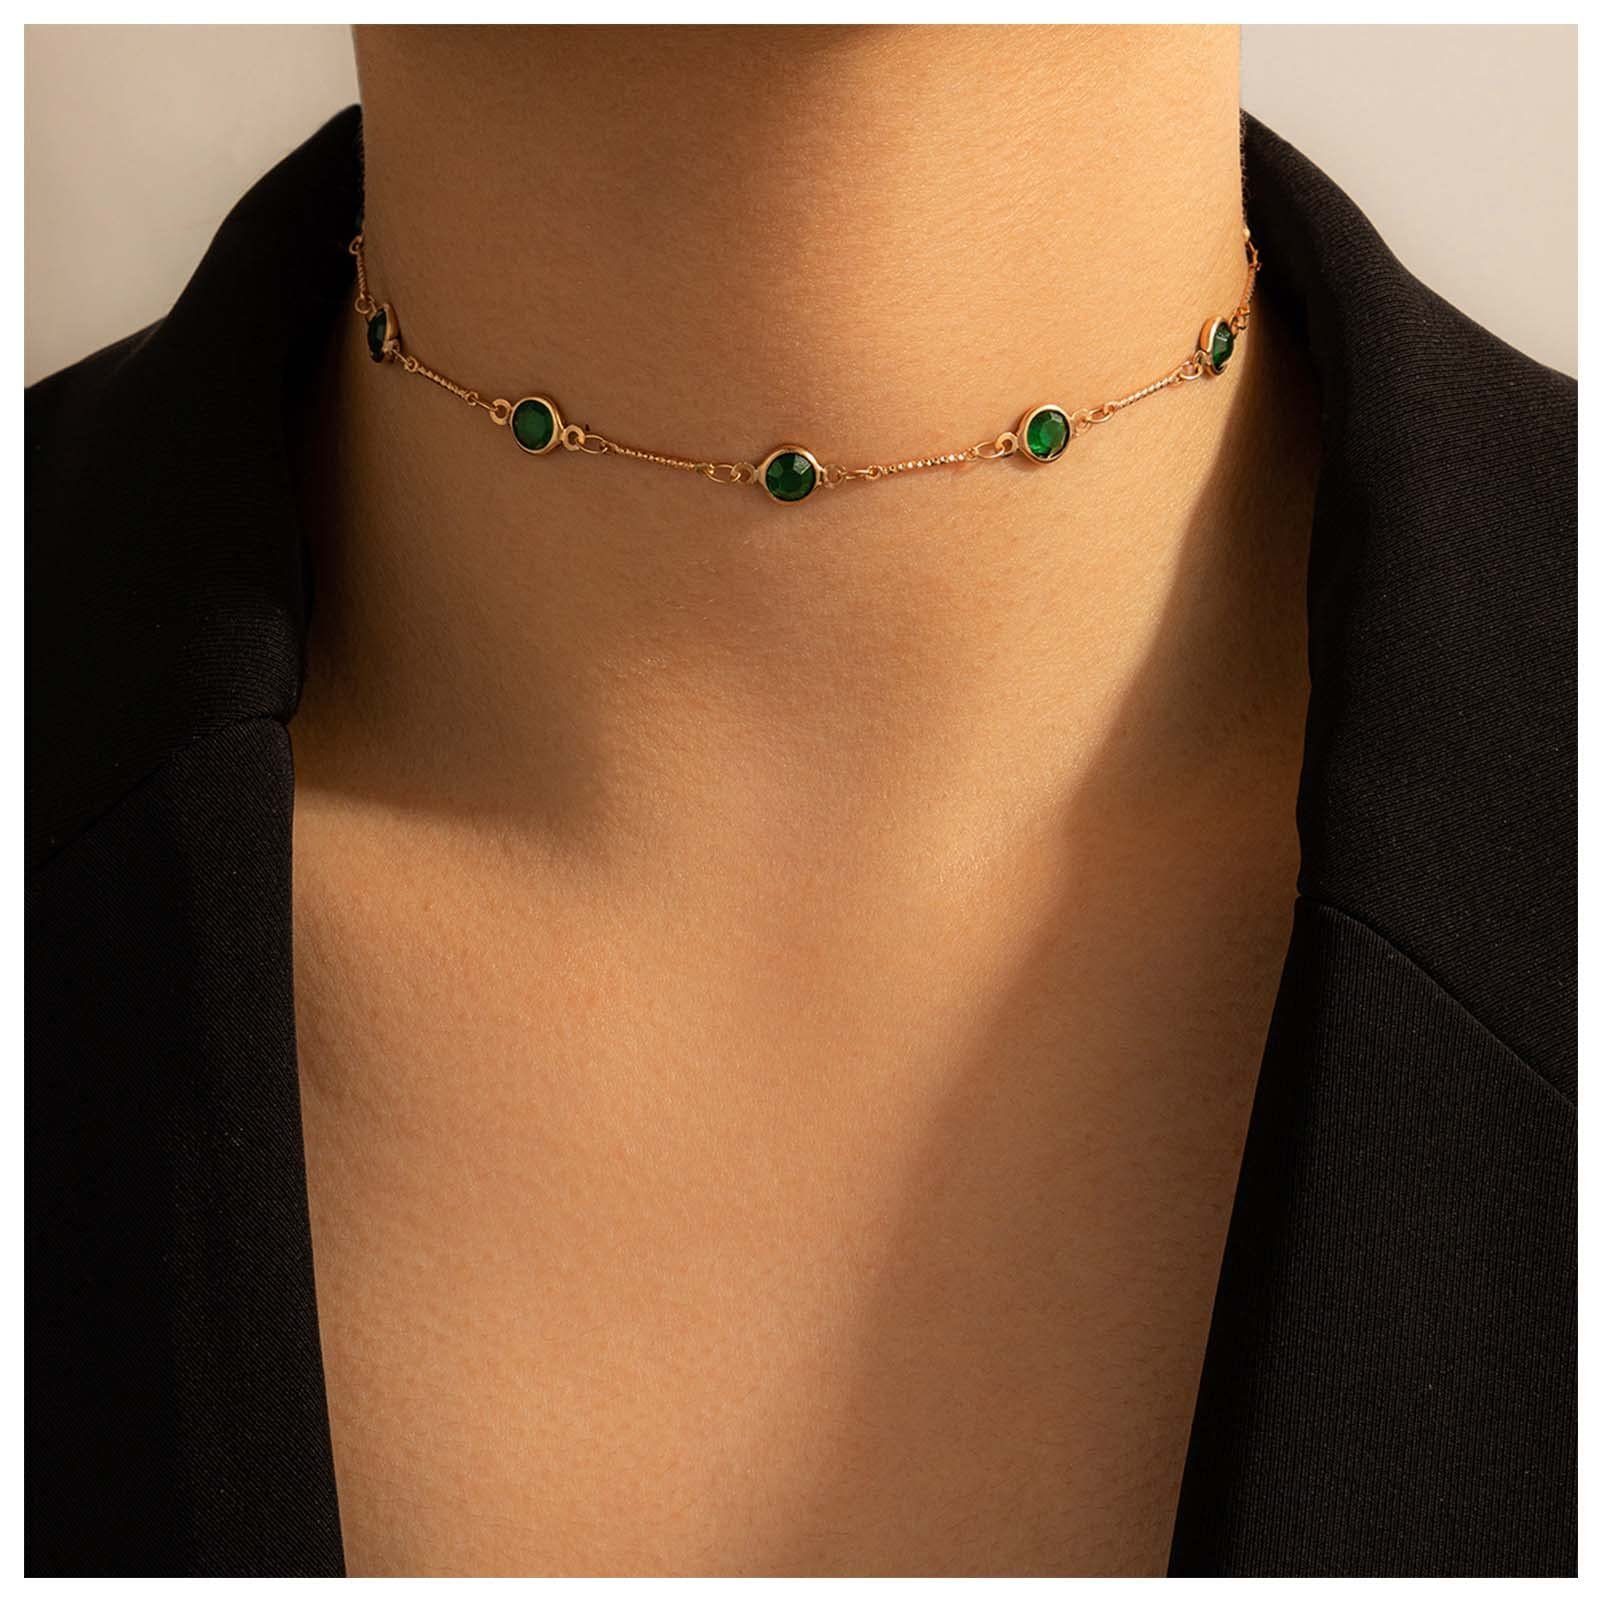 Housruse Charm-Kette »Grüne Jade-Kristallkette, Schlüsselbeinkette,  einlagige Kette« online kaufen | OTTO